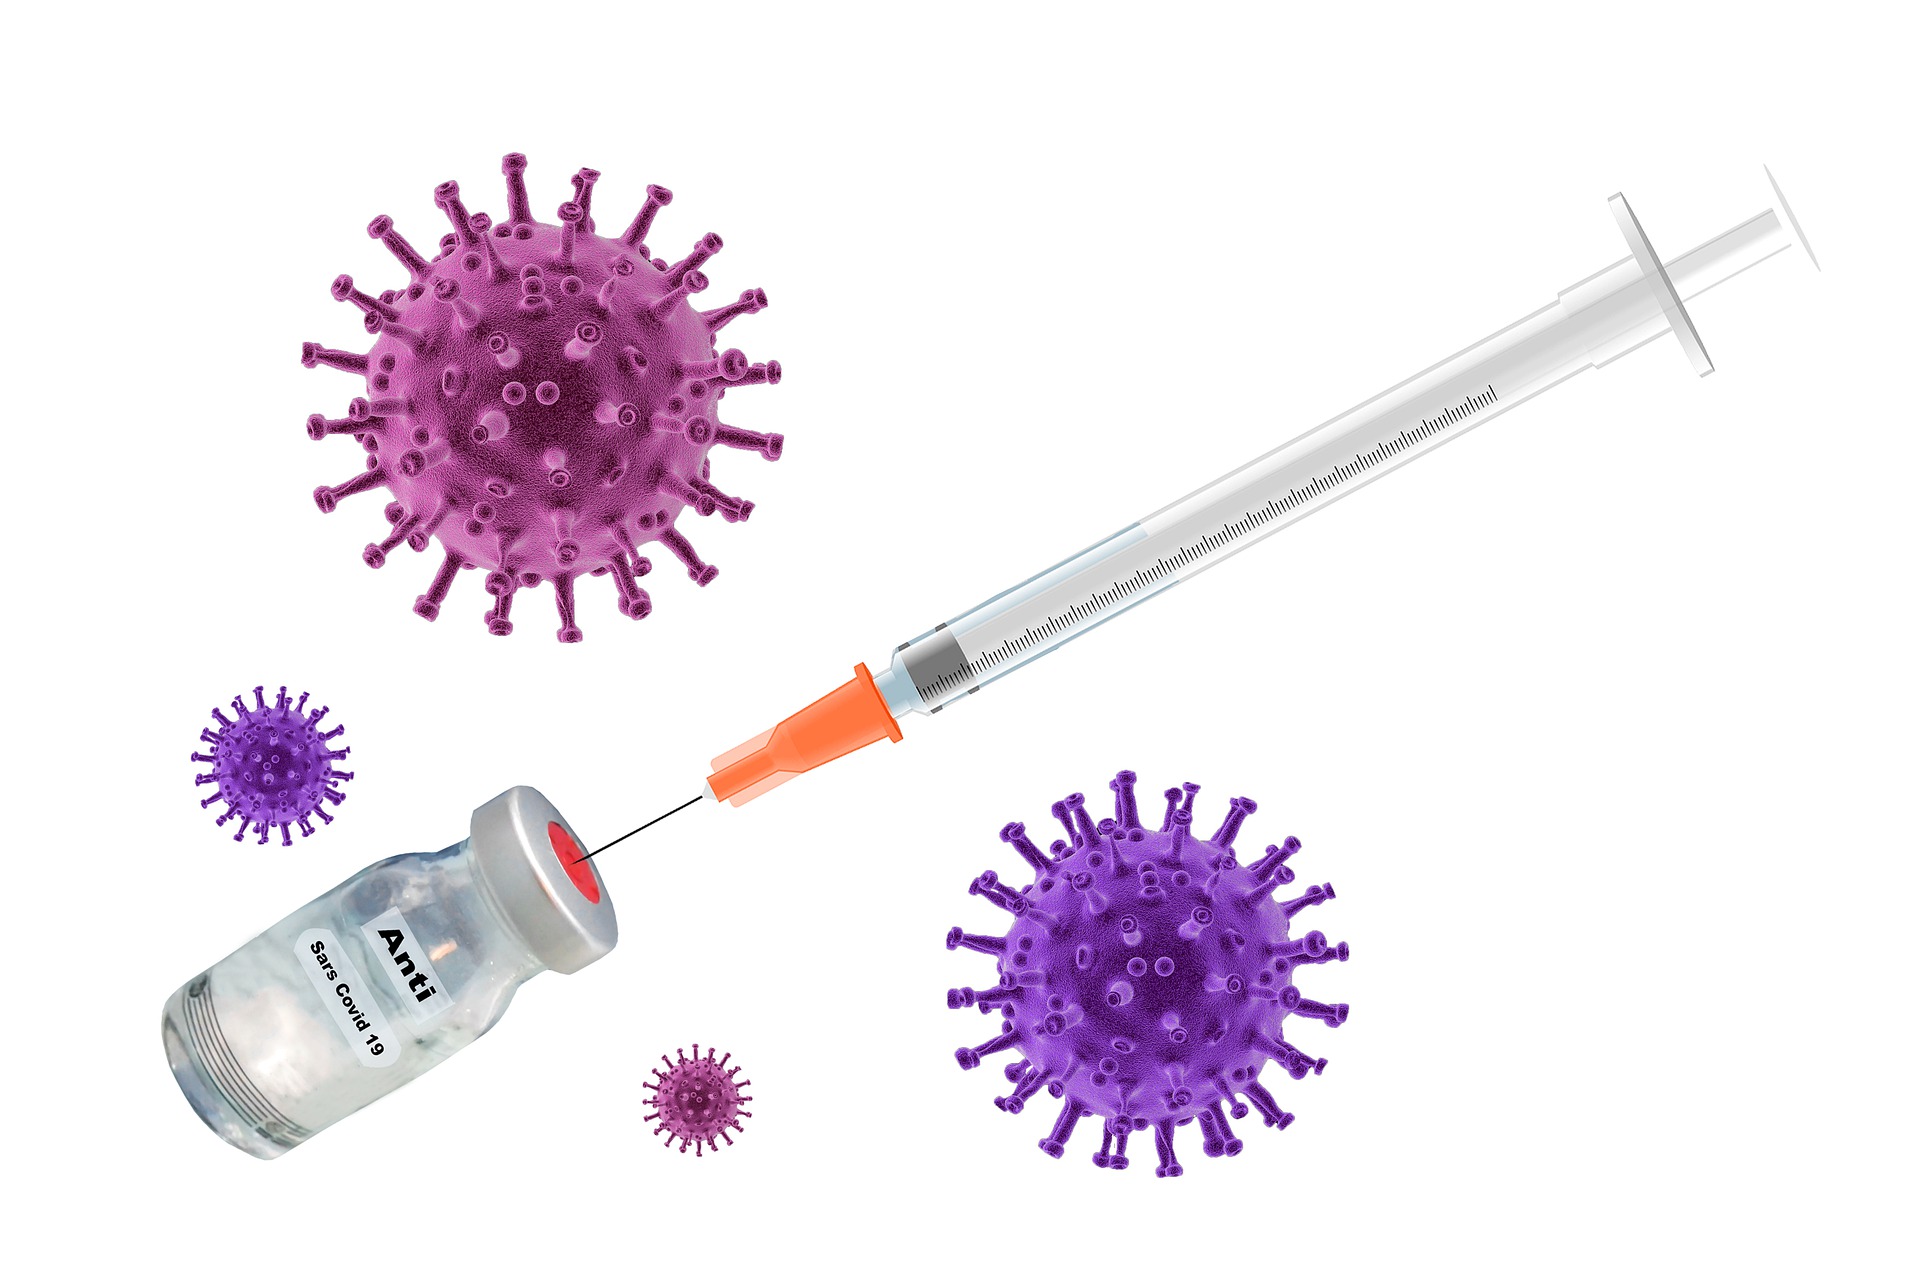 Auf diesem Bild ist eine Spritze mit einer Impfdosis und zwei Viren zu sehen.